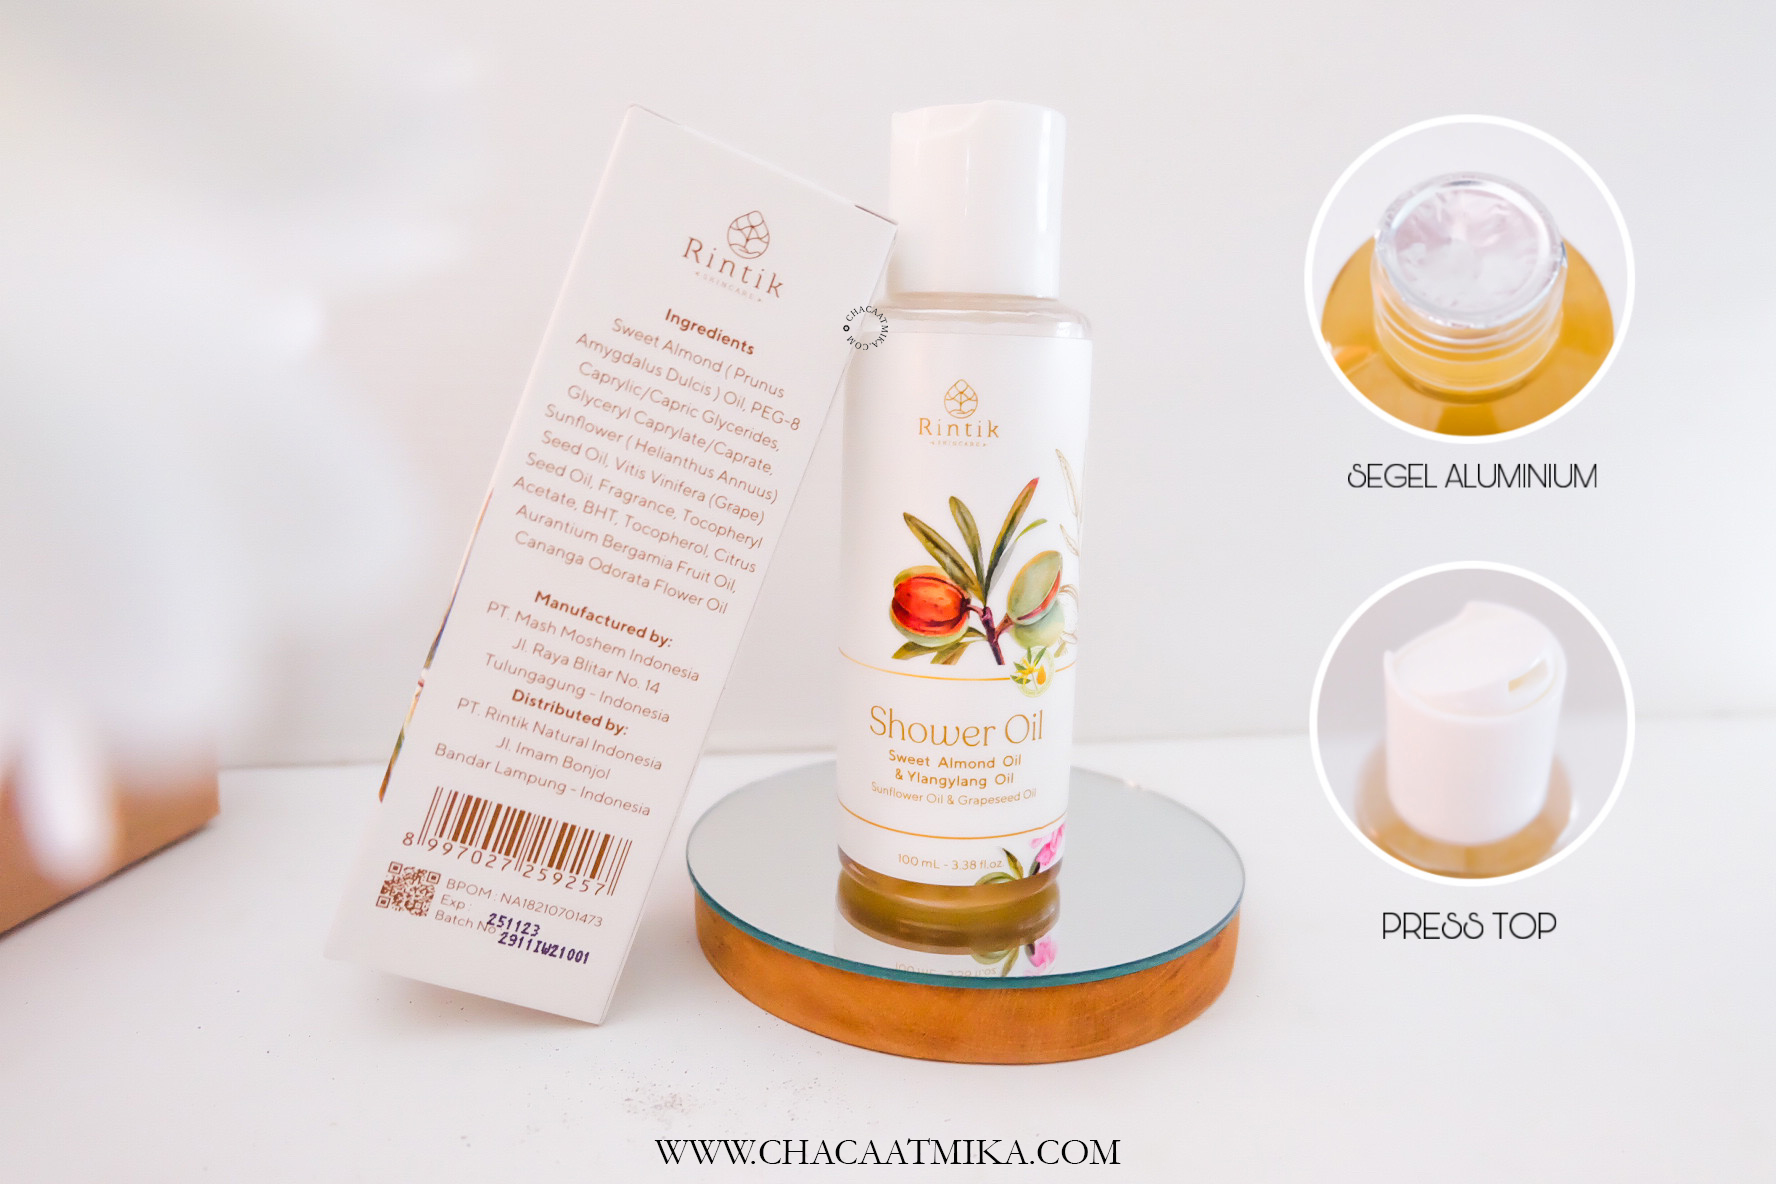 Rintik Shower Oil, Sabun Untuk Kulit Kering dengan Bahan Alami. 100% Effective for Dry Skin!